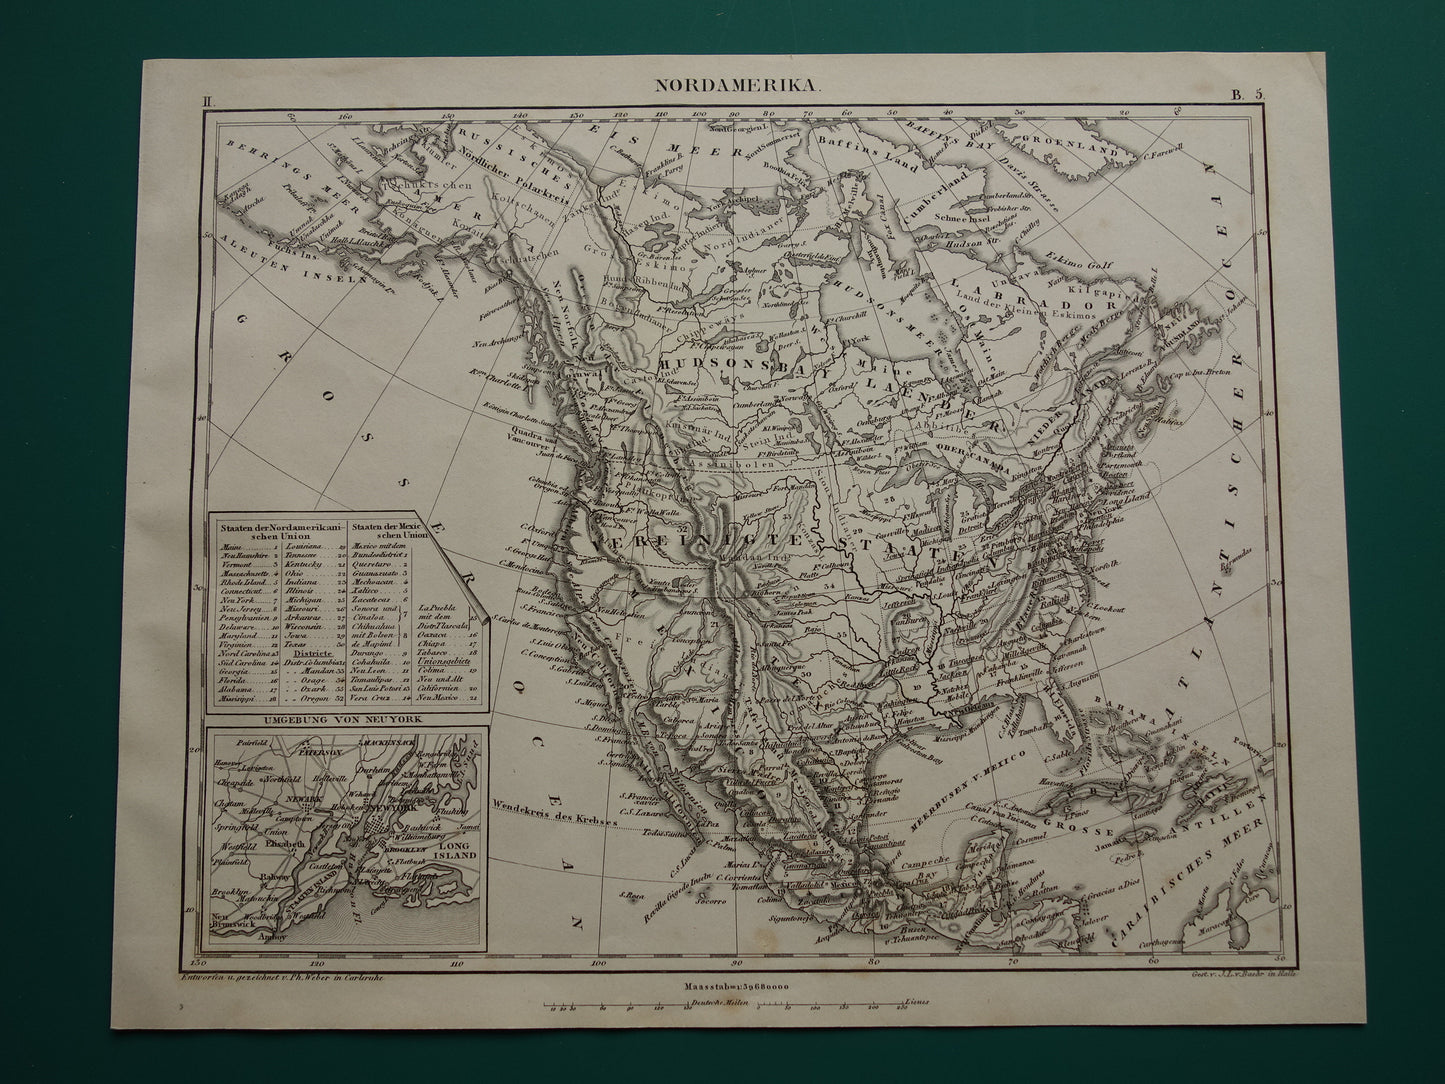 NOORD AMERIKA antieke kaart 170+ jaar oude landkaart van continent uit 1849 - originele vintage historische kaarten